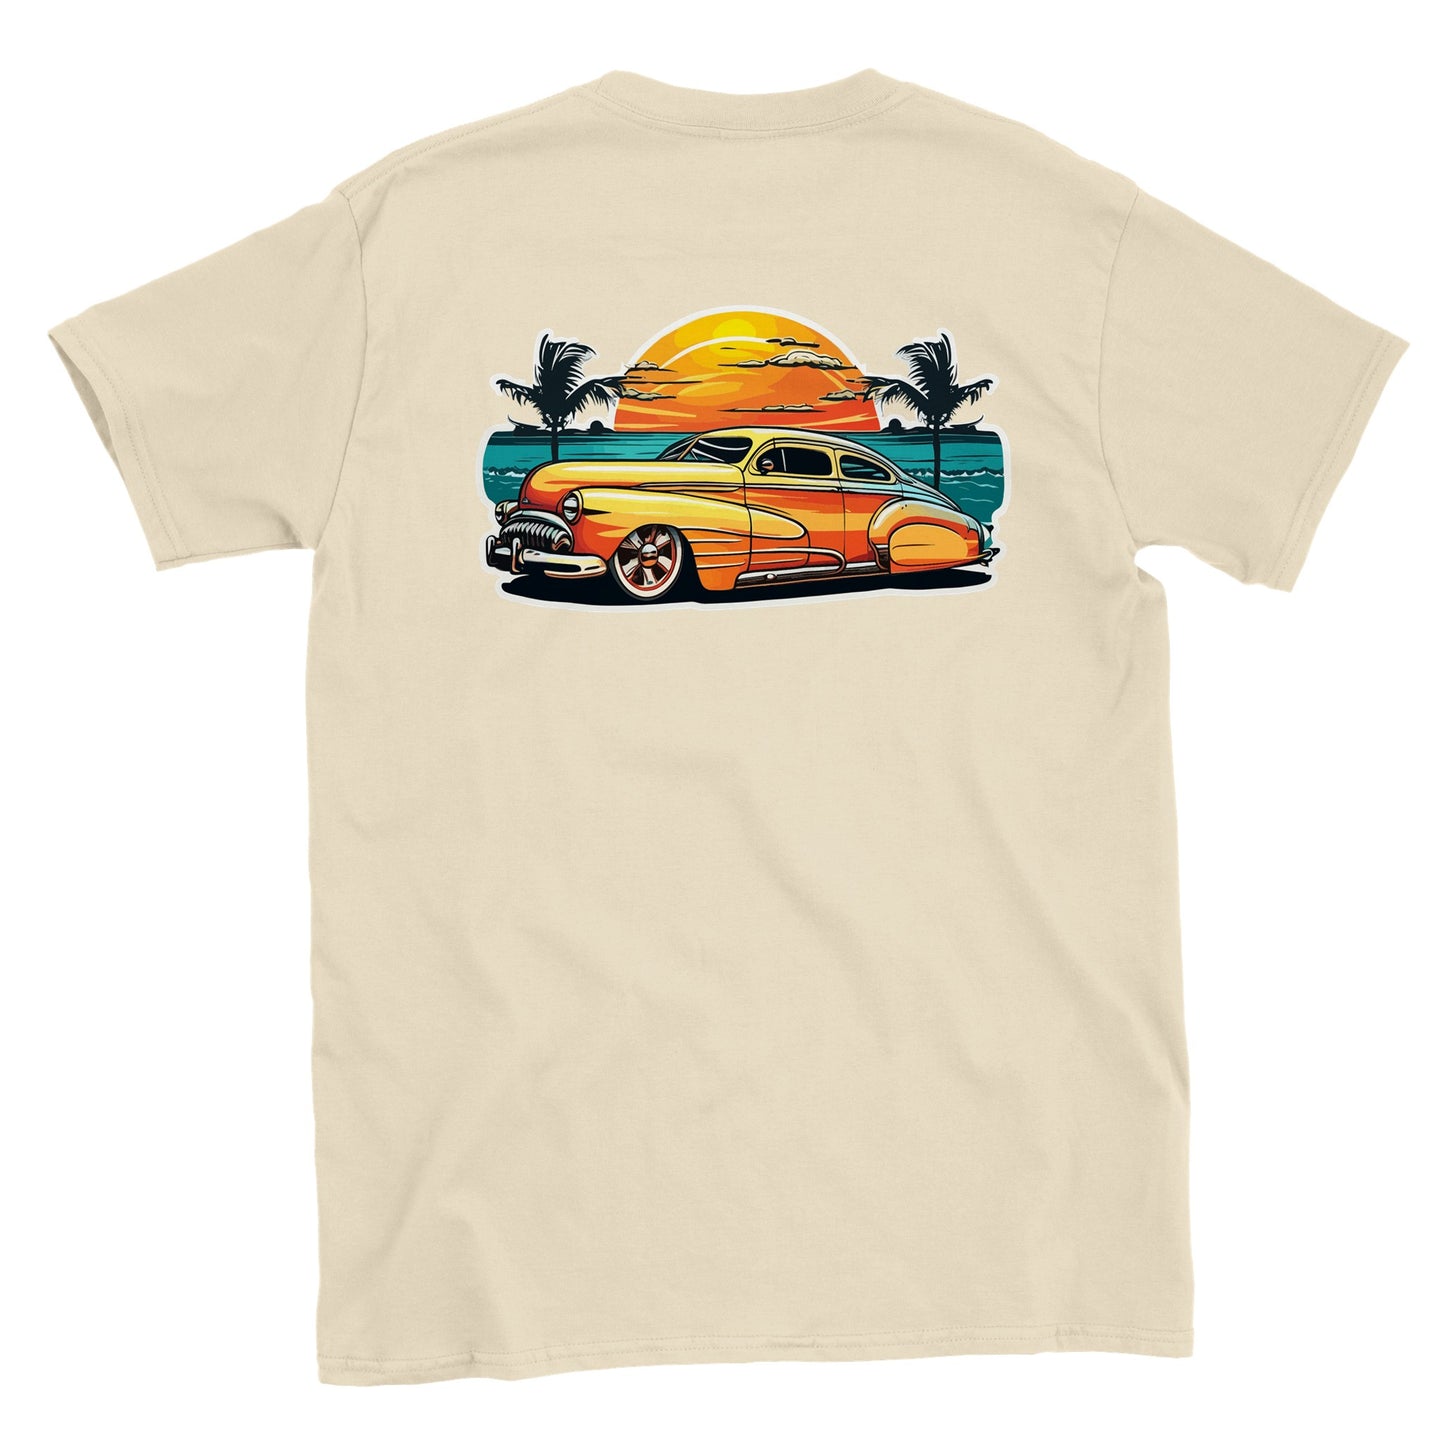 Lead Sled on the Beach - Classic Unisex Crewneck T-shirt - Mister Snarky's